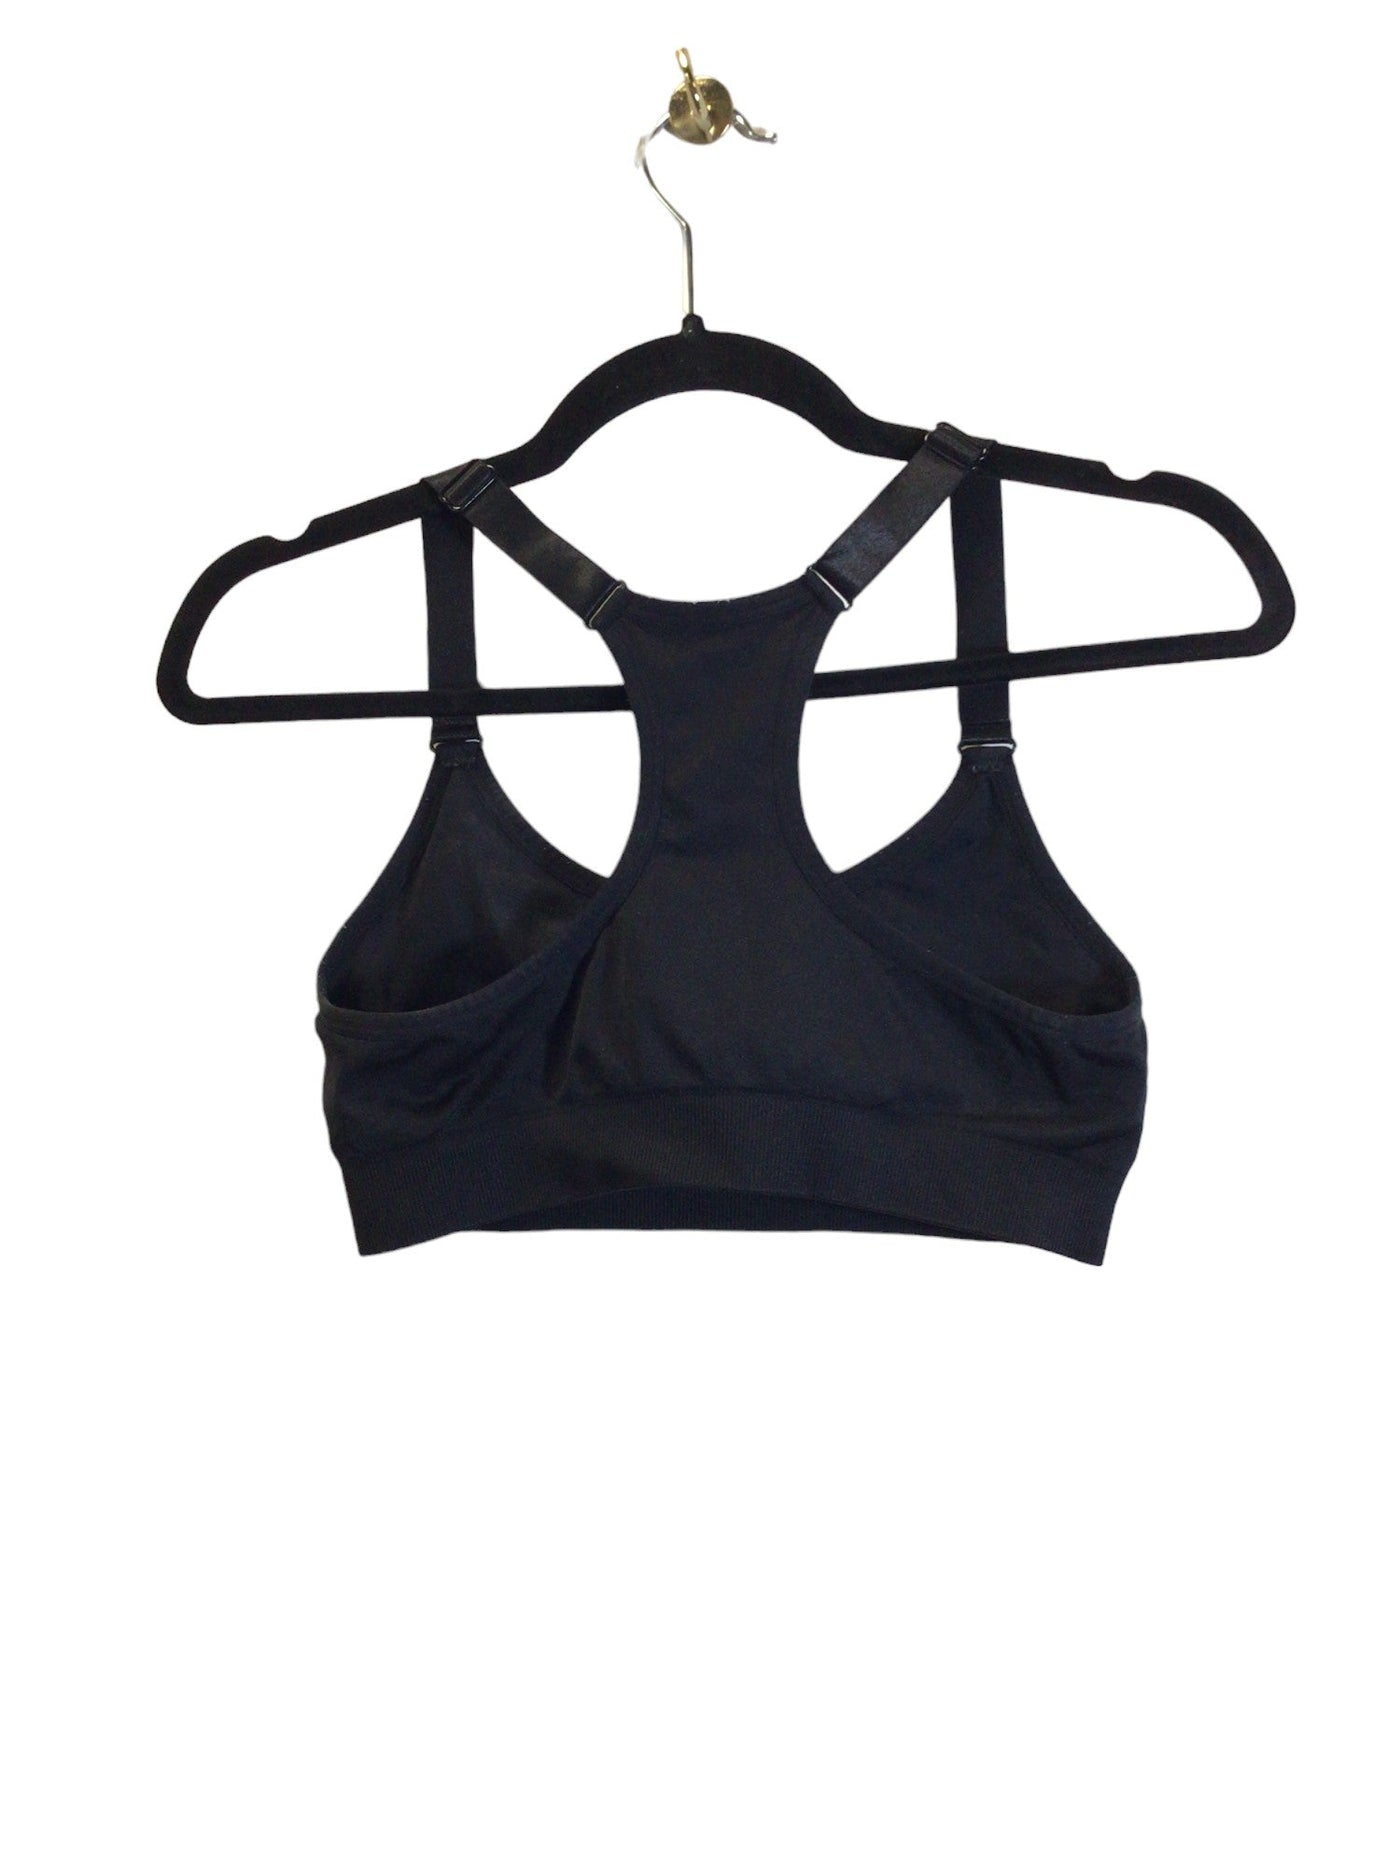 PUMA Women Activewear Sports Bras Regular fit in Black - Size M | 18.5 $ KOOP